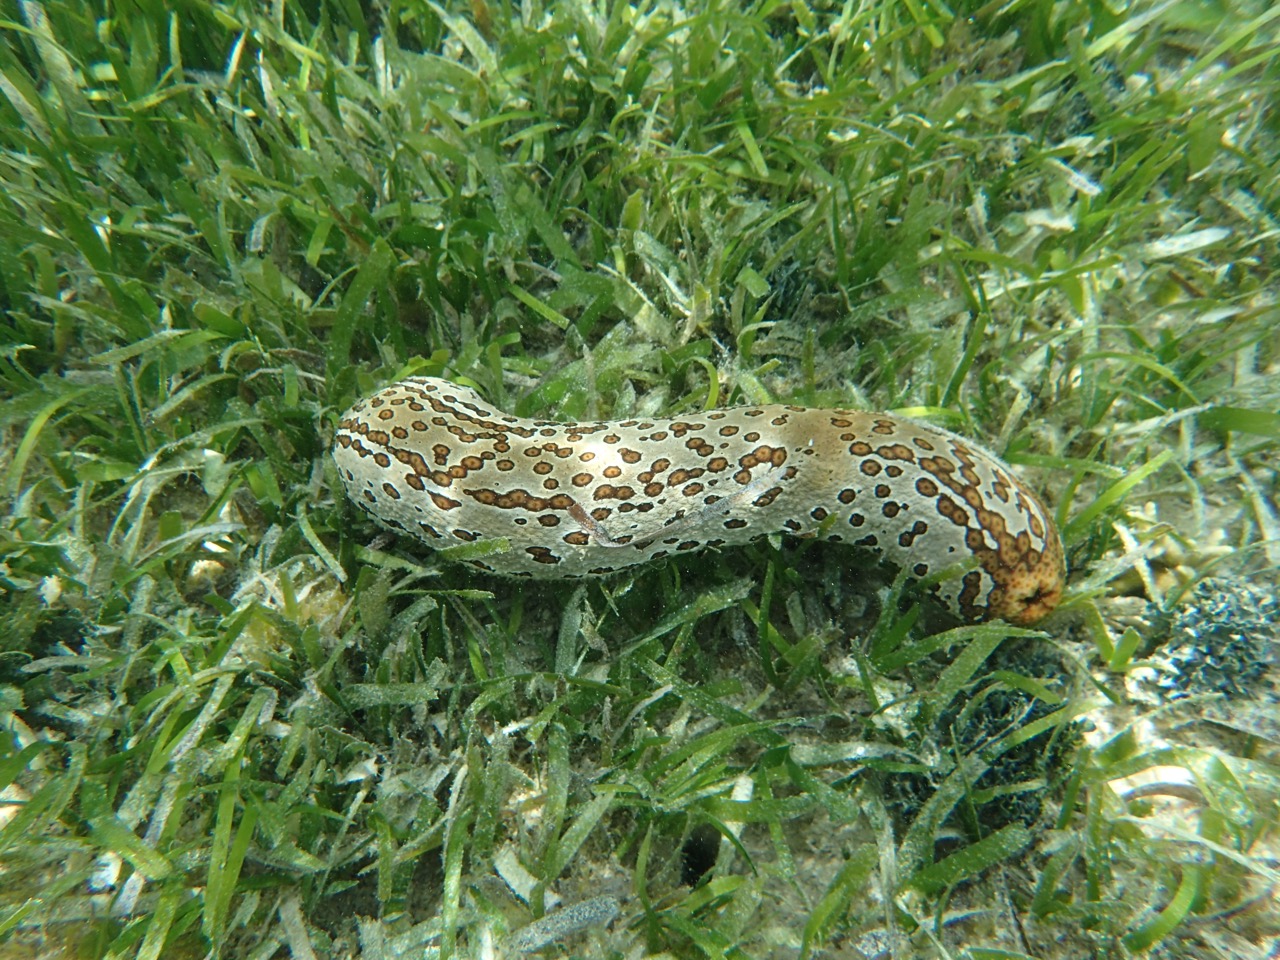 Kitava Island Sea cucumber